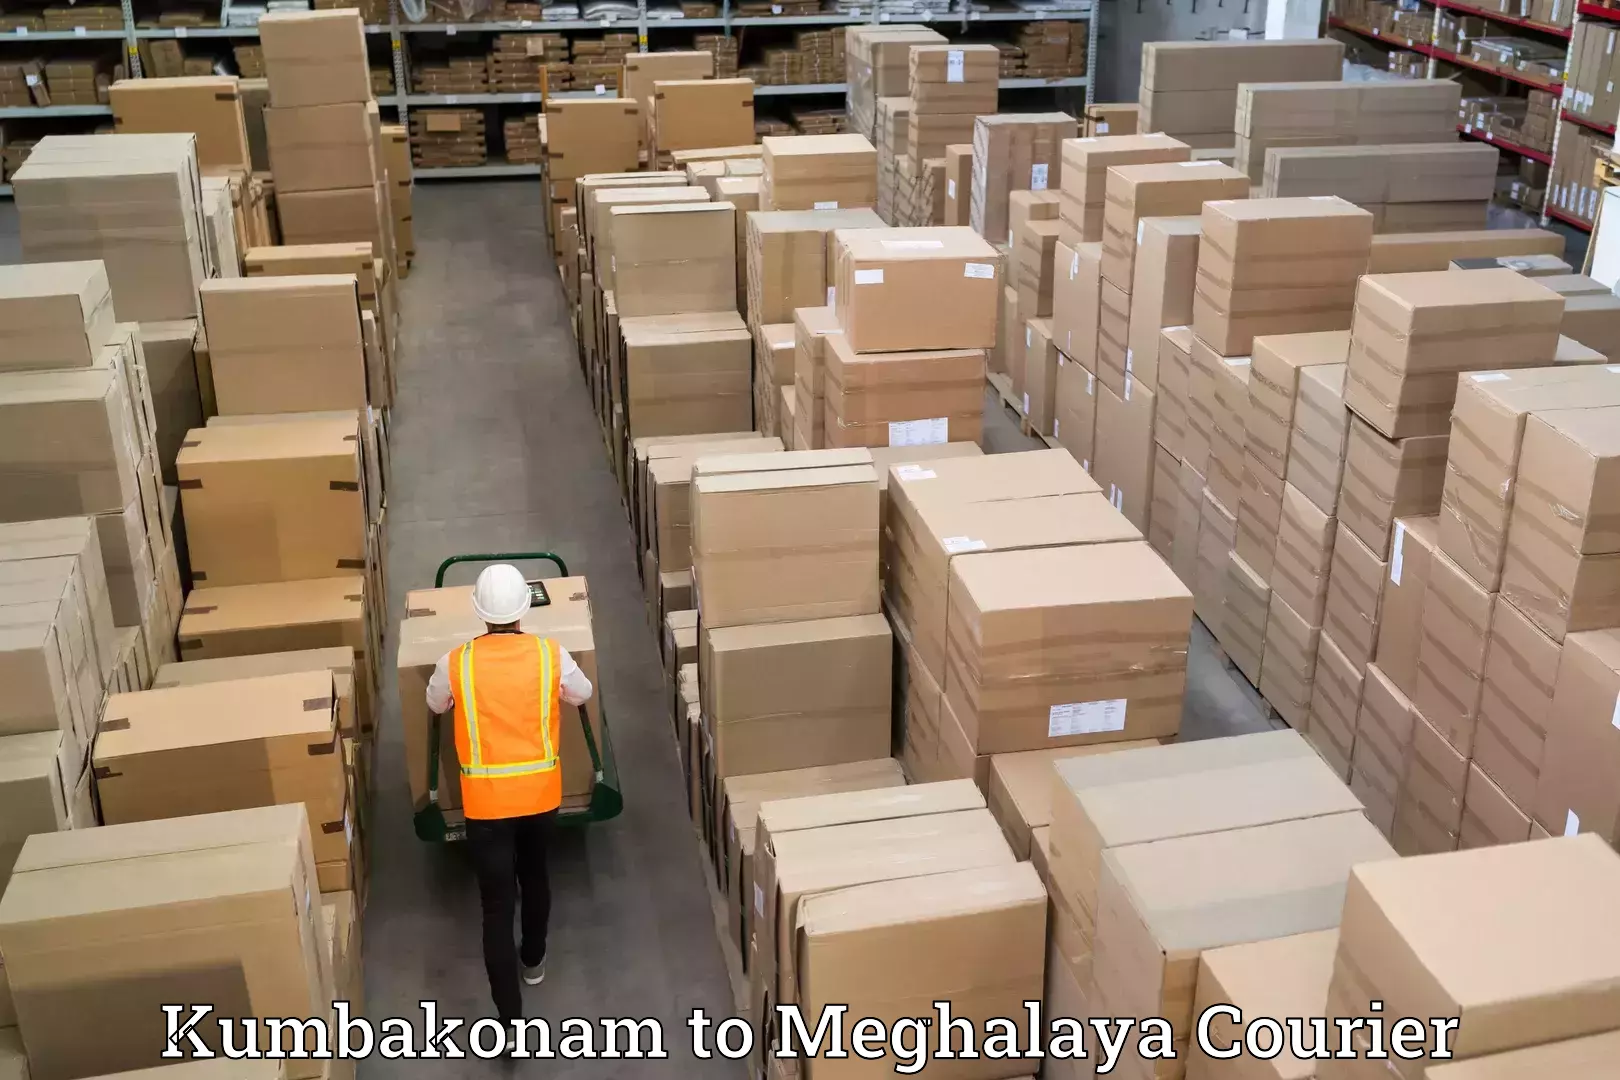 Professional moving assistance Kumbakonam to Meghalaya